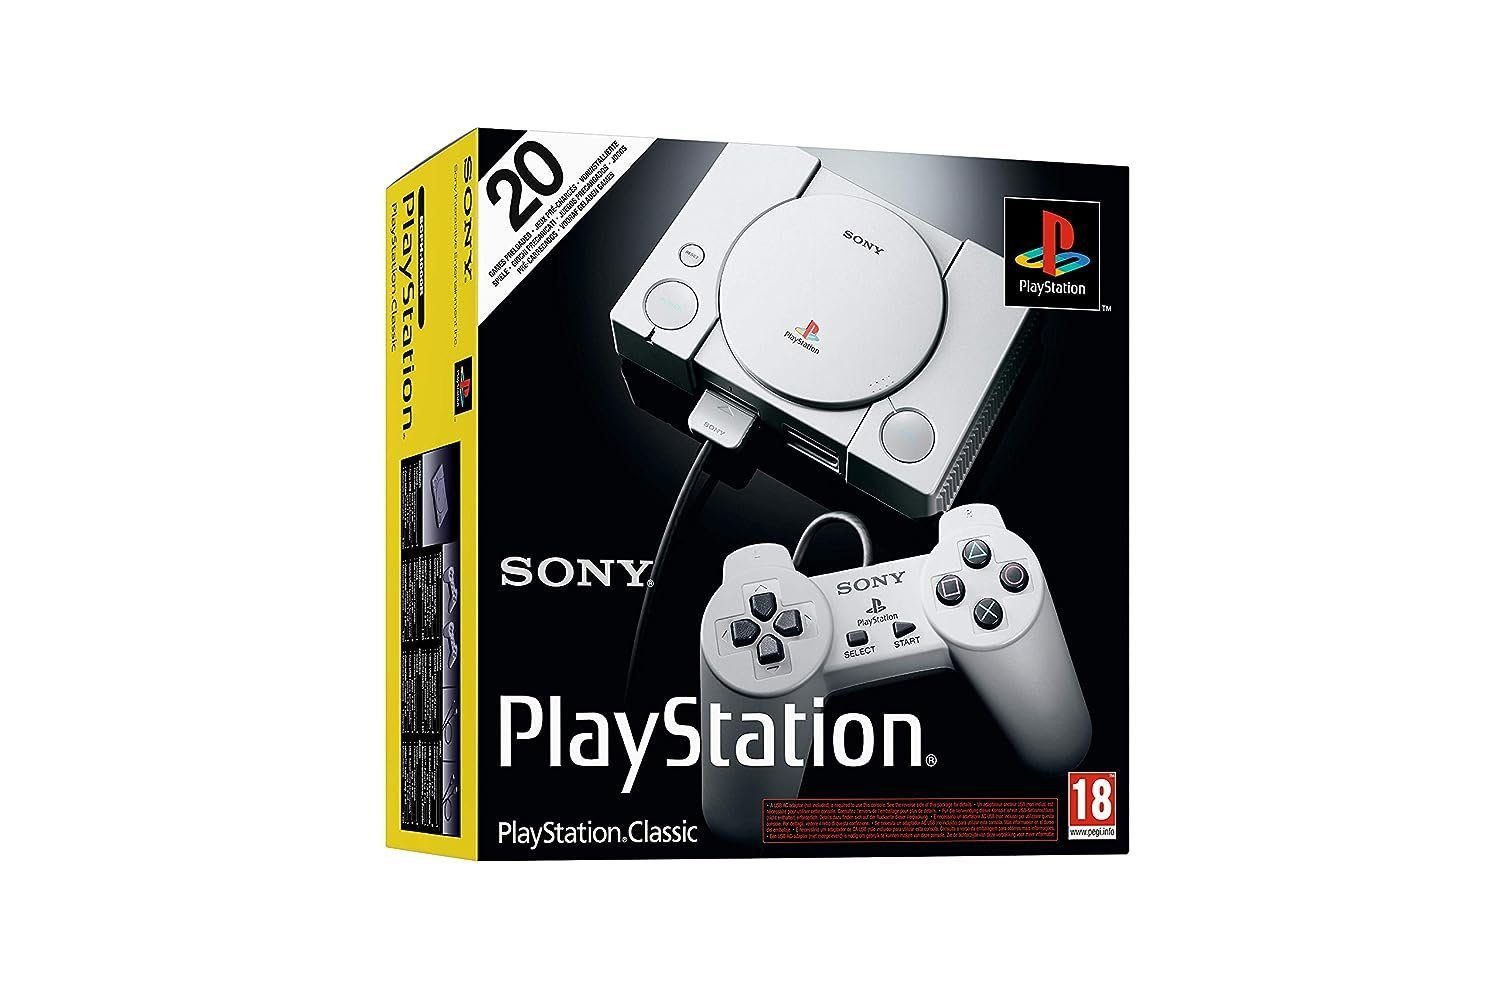 Playstation Playstation 1 Classic Edition, 20 Digital Spiele, Spielkonsole Konsole (inkl. 2 Controller, 20 Spiele auf Festplatte), Gaming Konsolen Spielkonsolen Videospiel Konsole PS5 Videospielkonsole